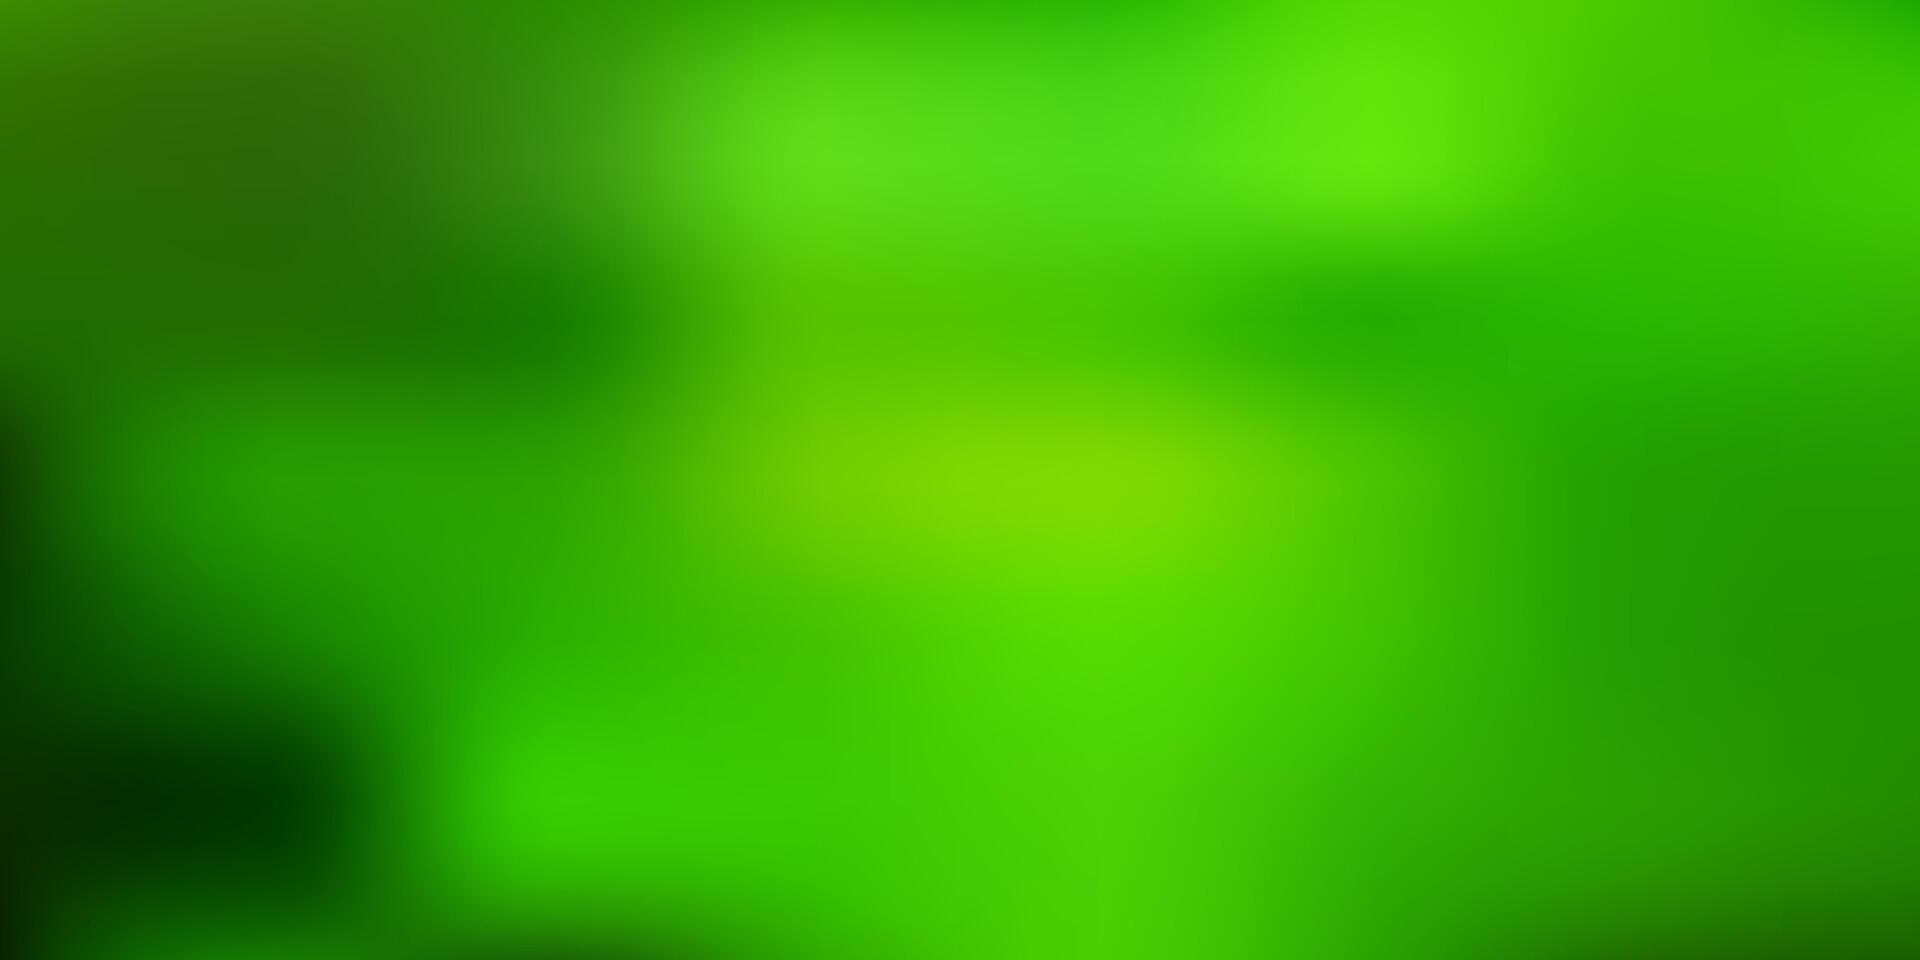 ljusgrön, gul suddighetsbakgrund för vektor. vektor